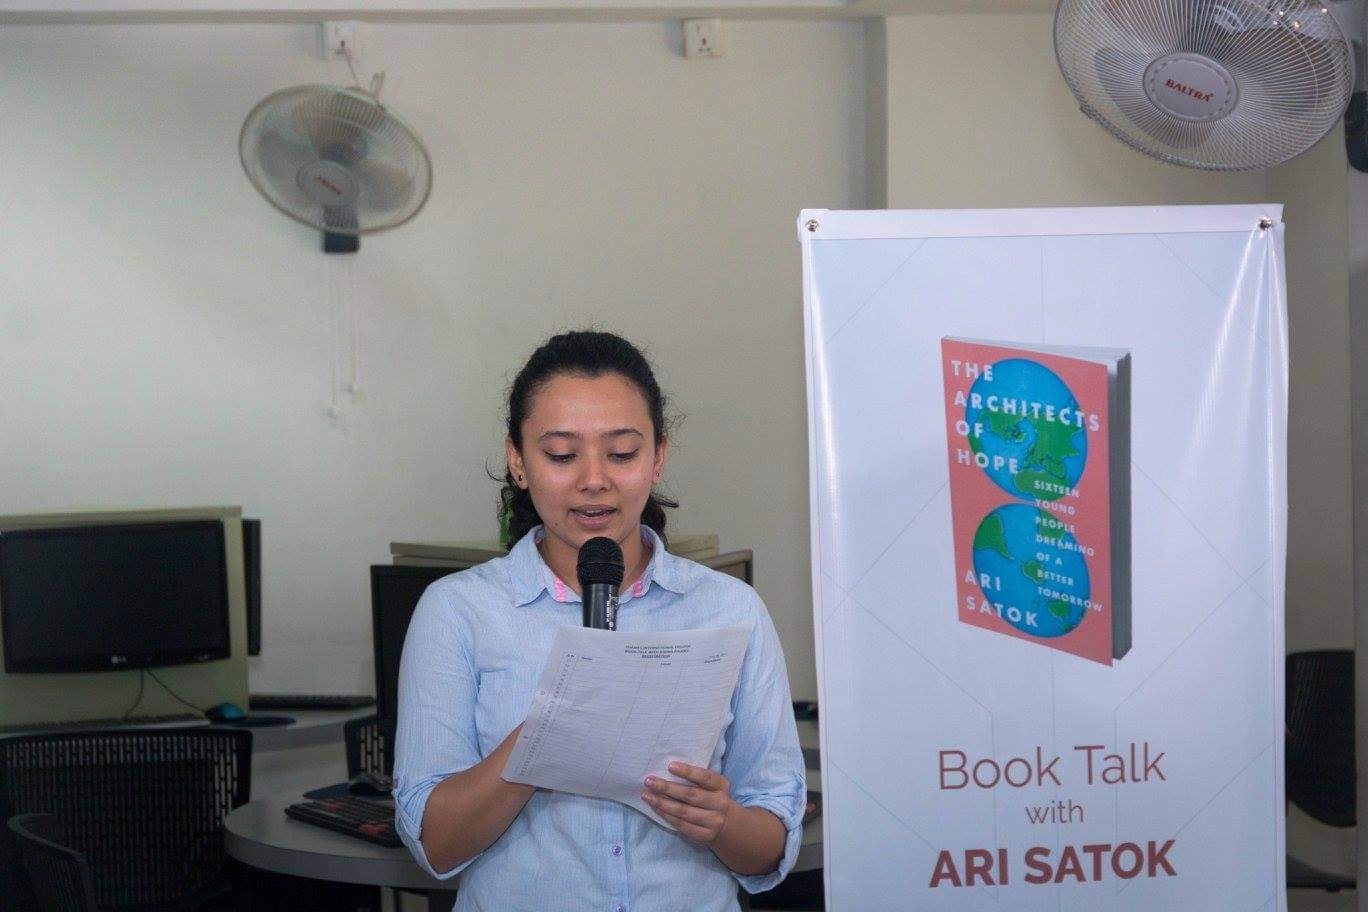 Book Talk with Ari Satok